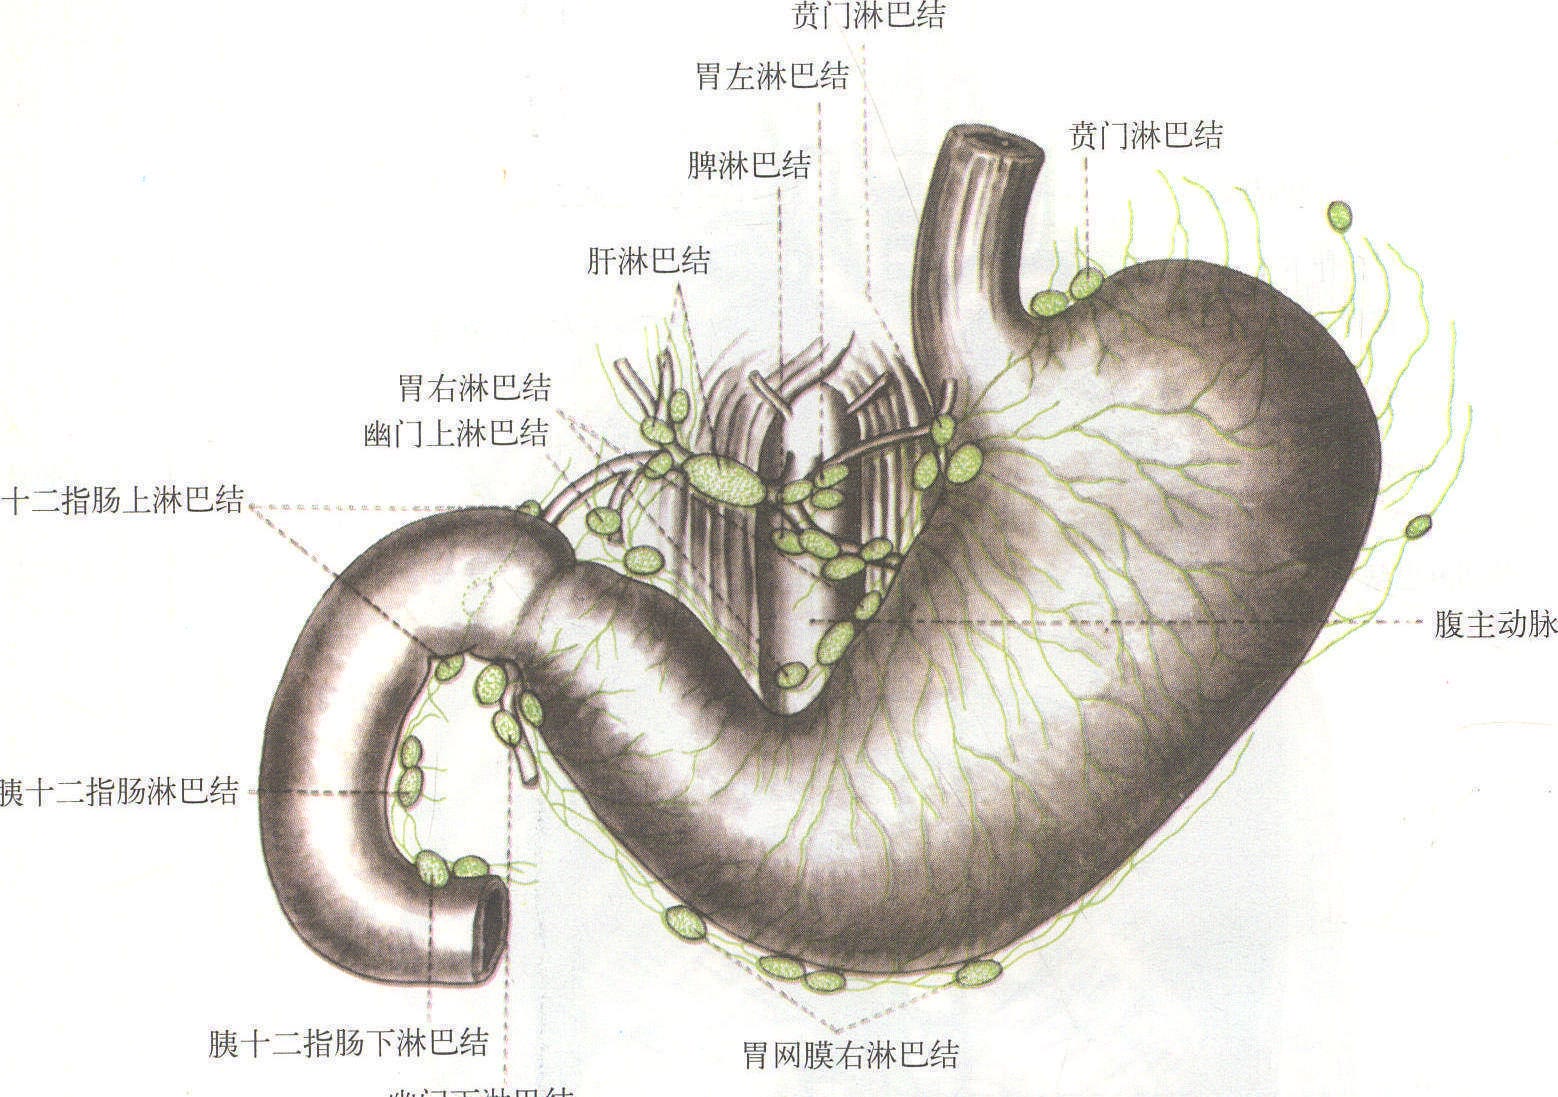 直肠癌侧方淋巴结的概念与侧方淋巴结清扫的争议 - 中华胃肠外科杂志